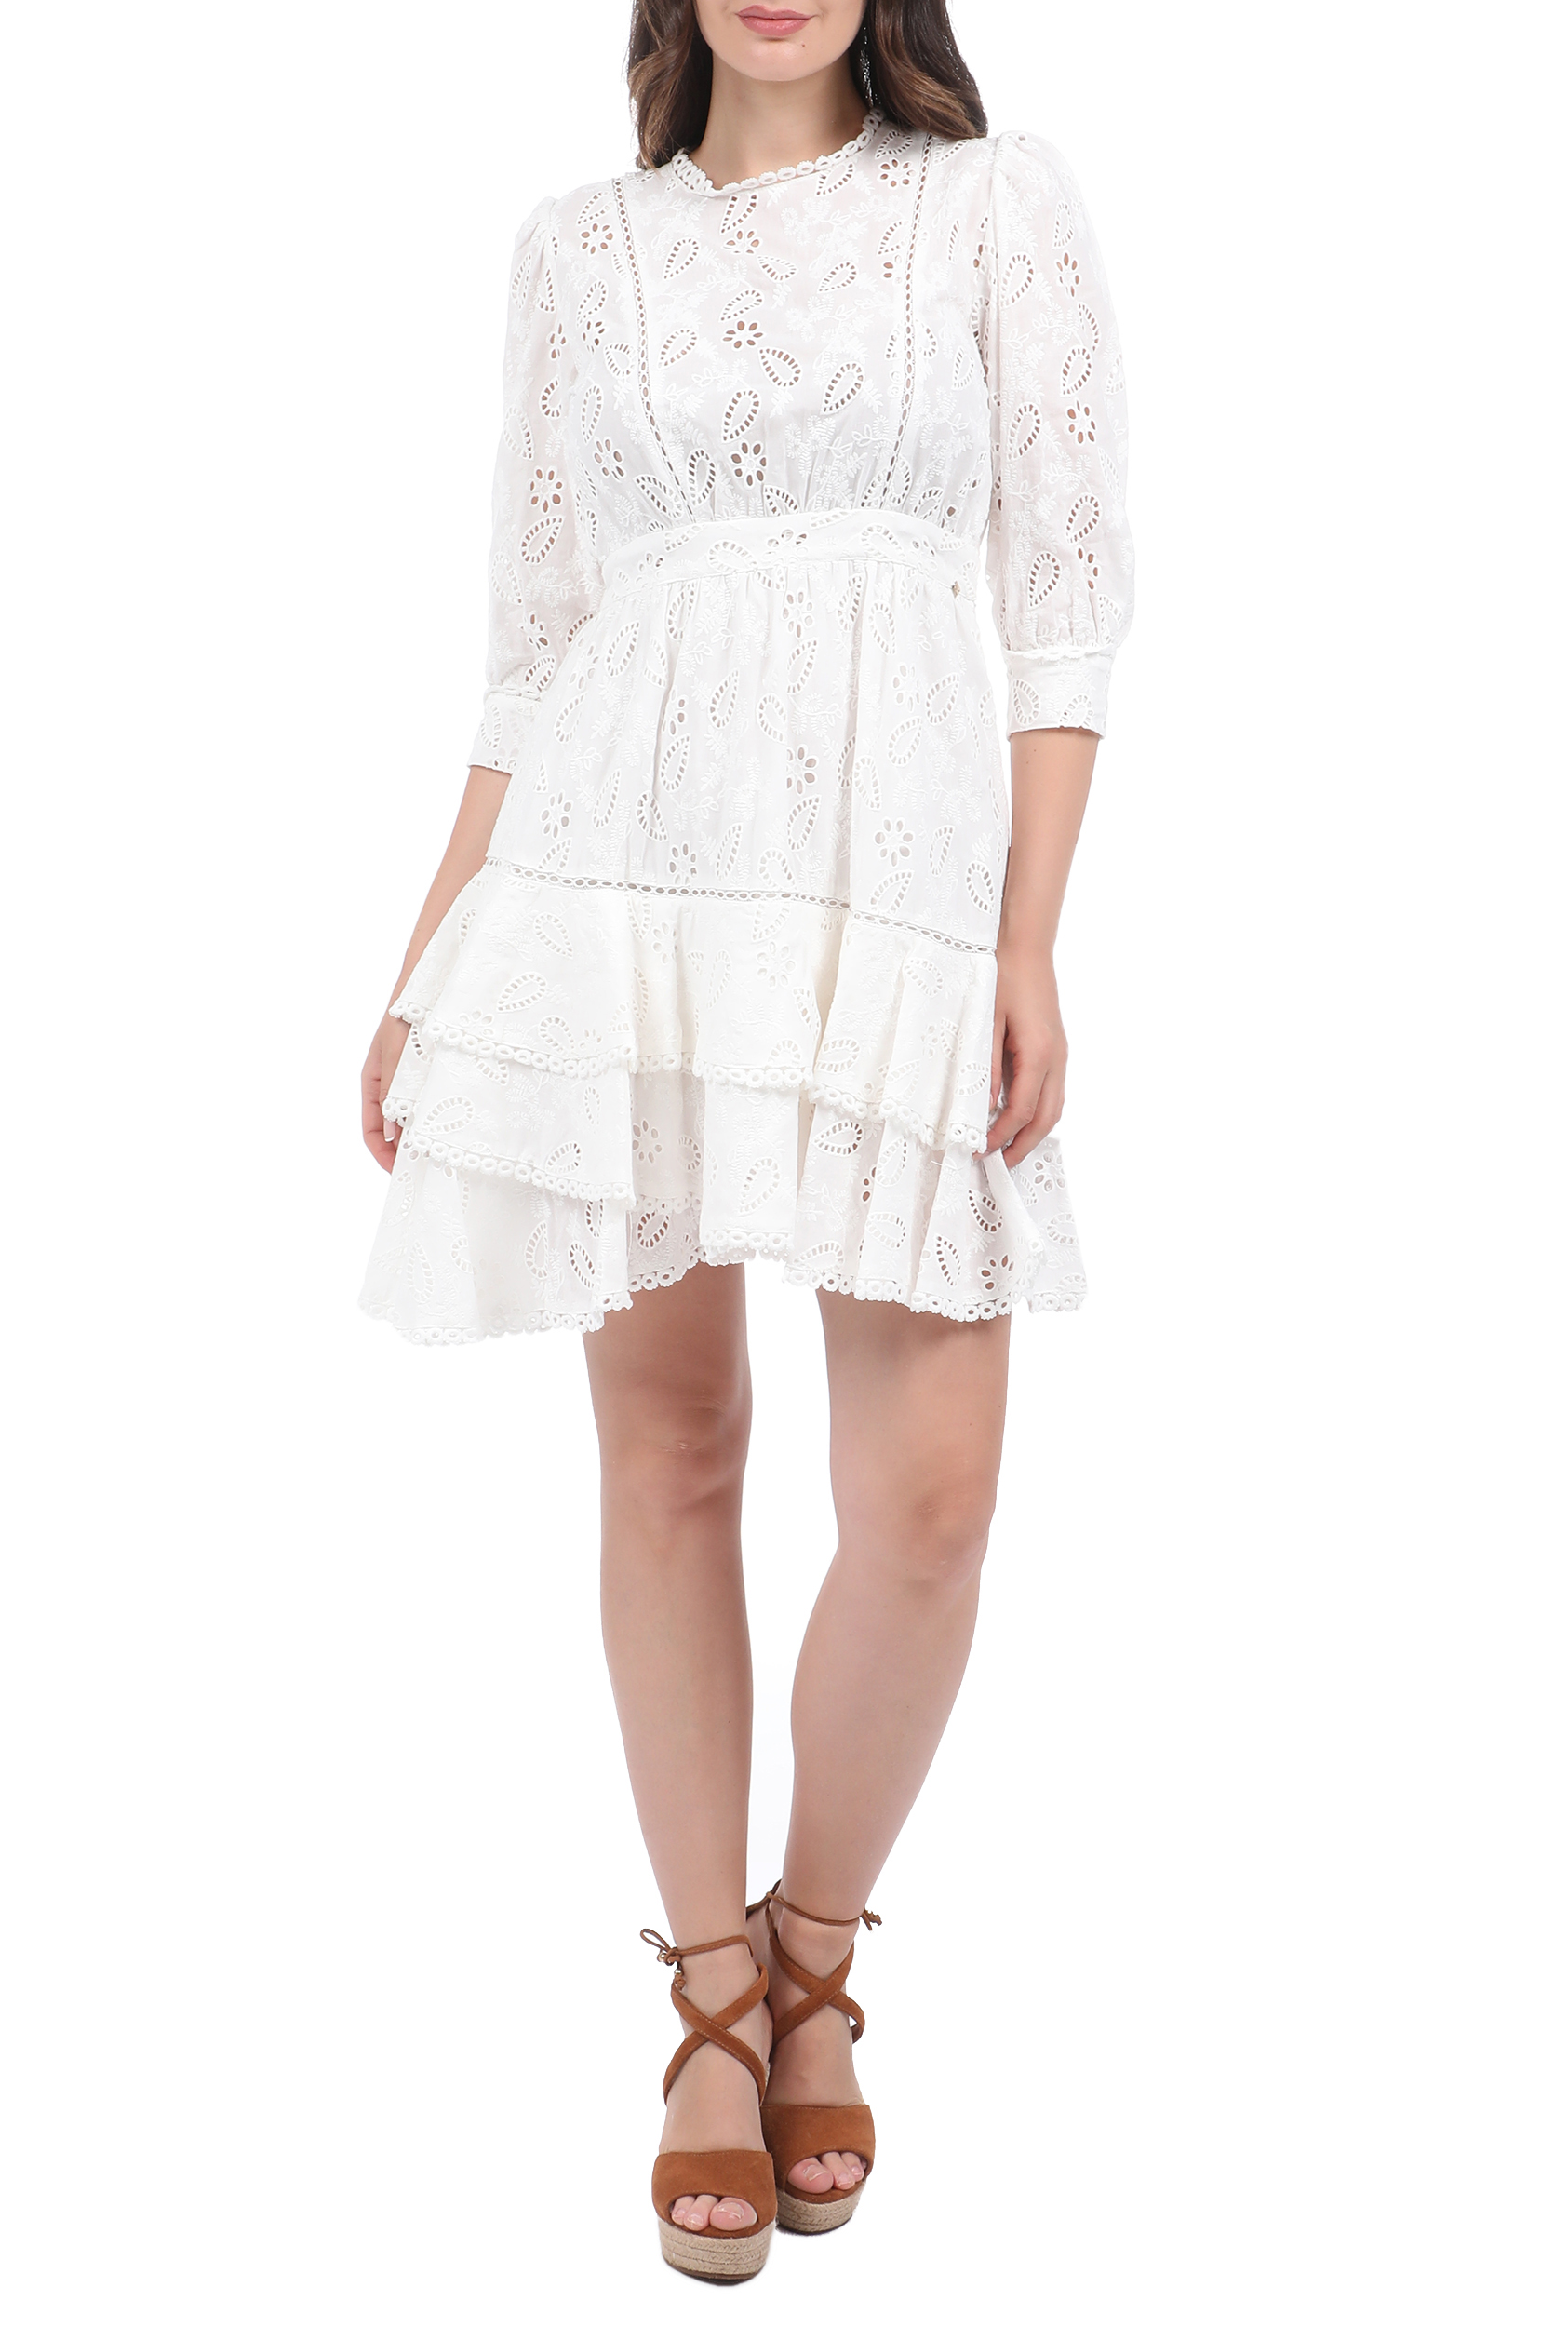 Γυναικεία/Ρούχα/Φόρεματα/Μίνι KOCCA - Γυνακείο mini φόρεμα KOCCA TEJAL λευκό